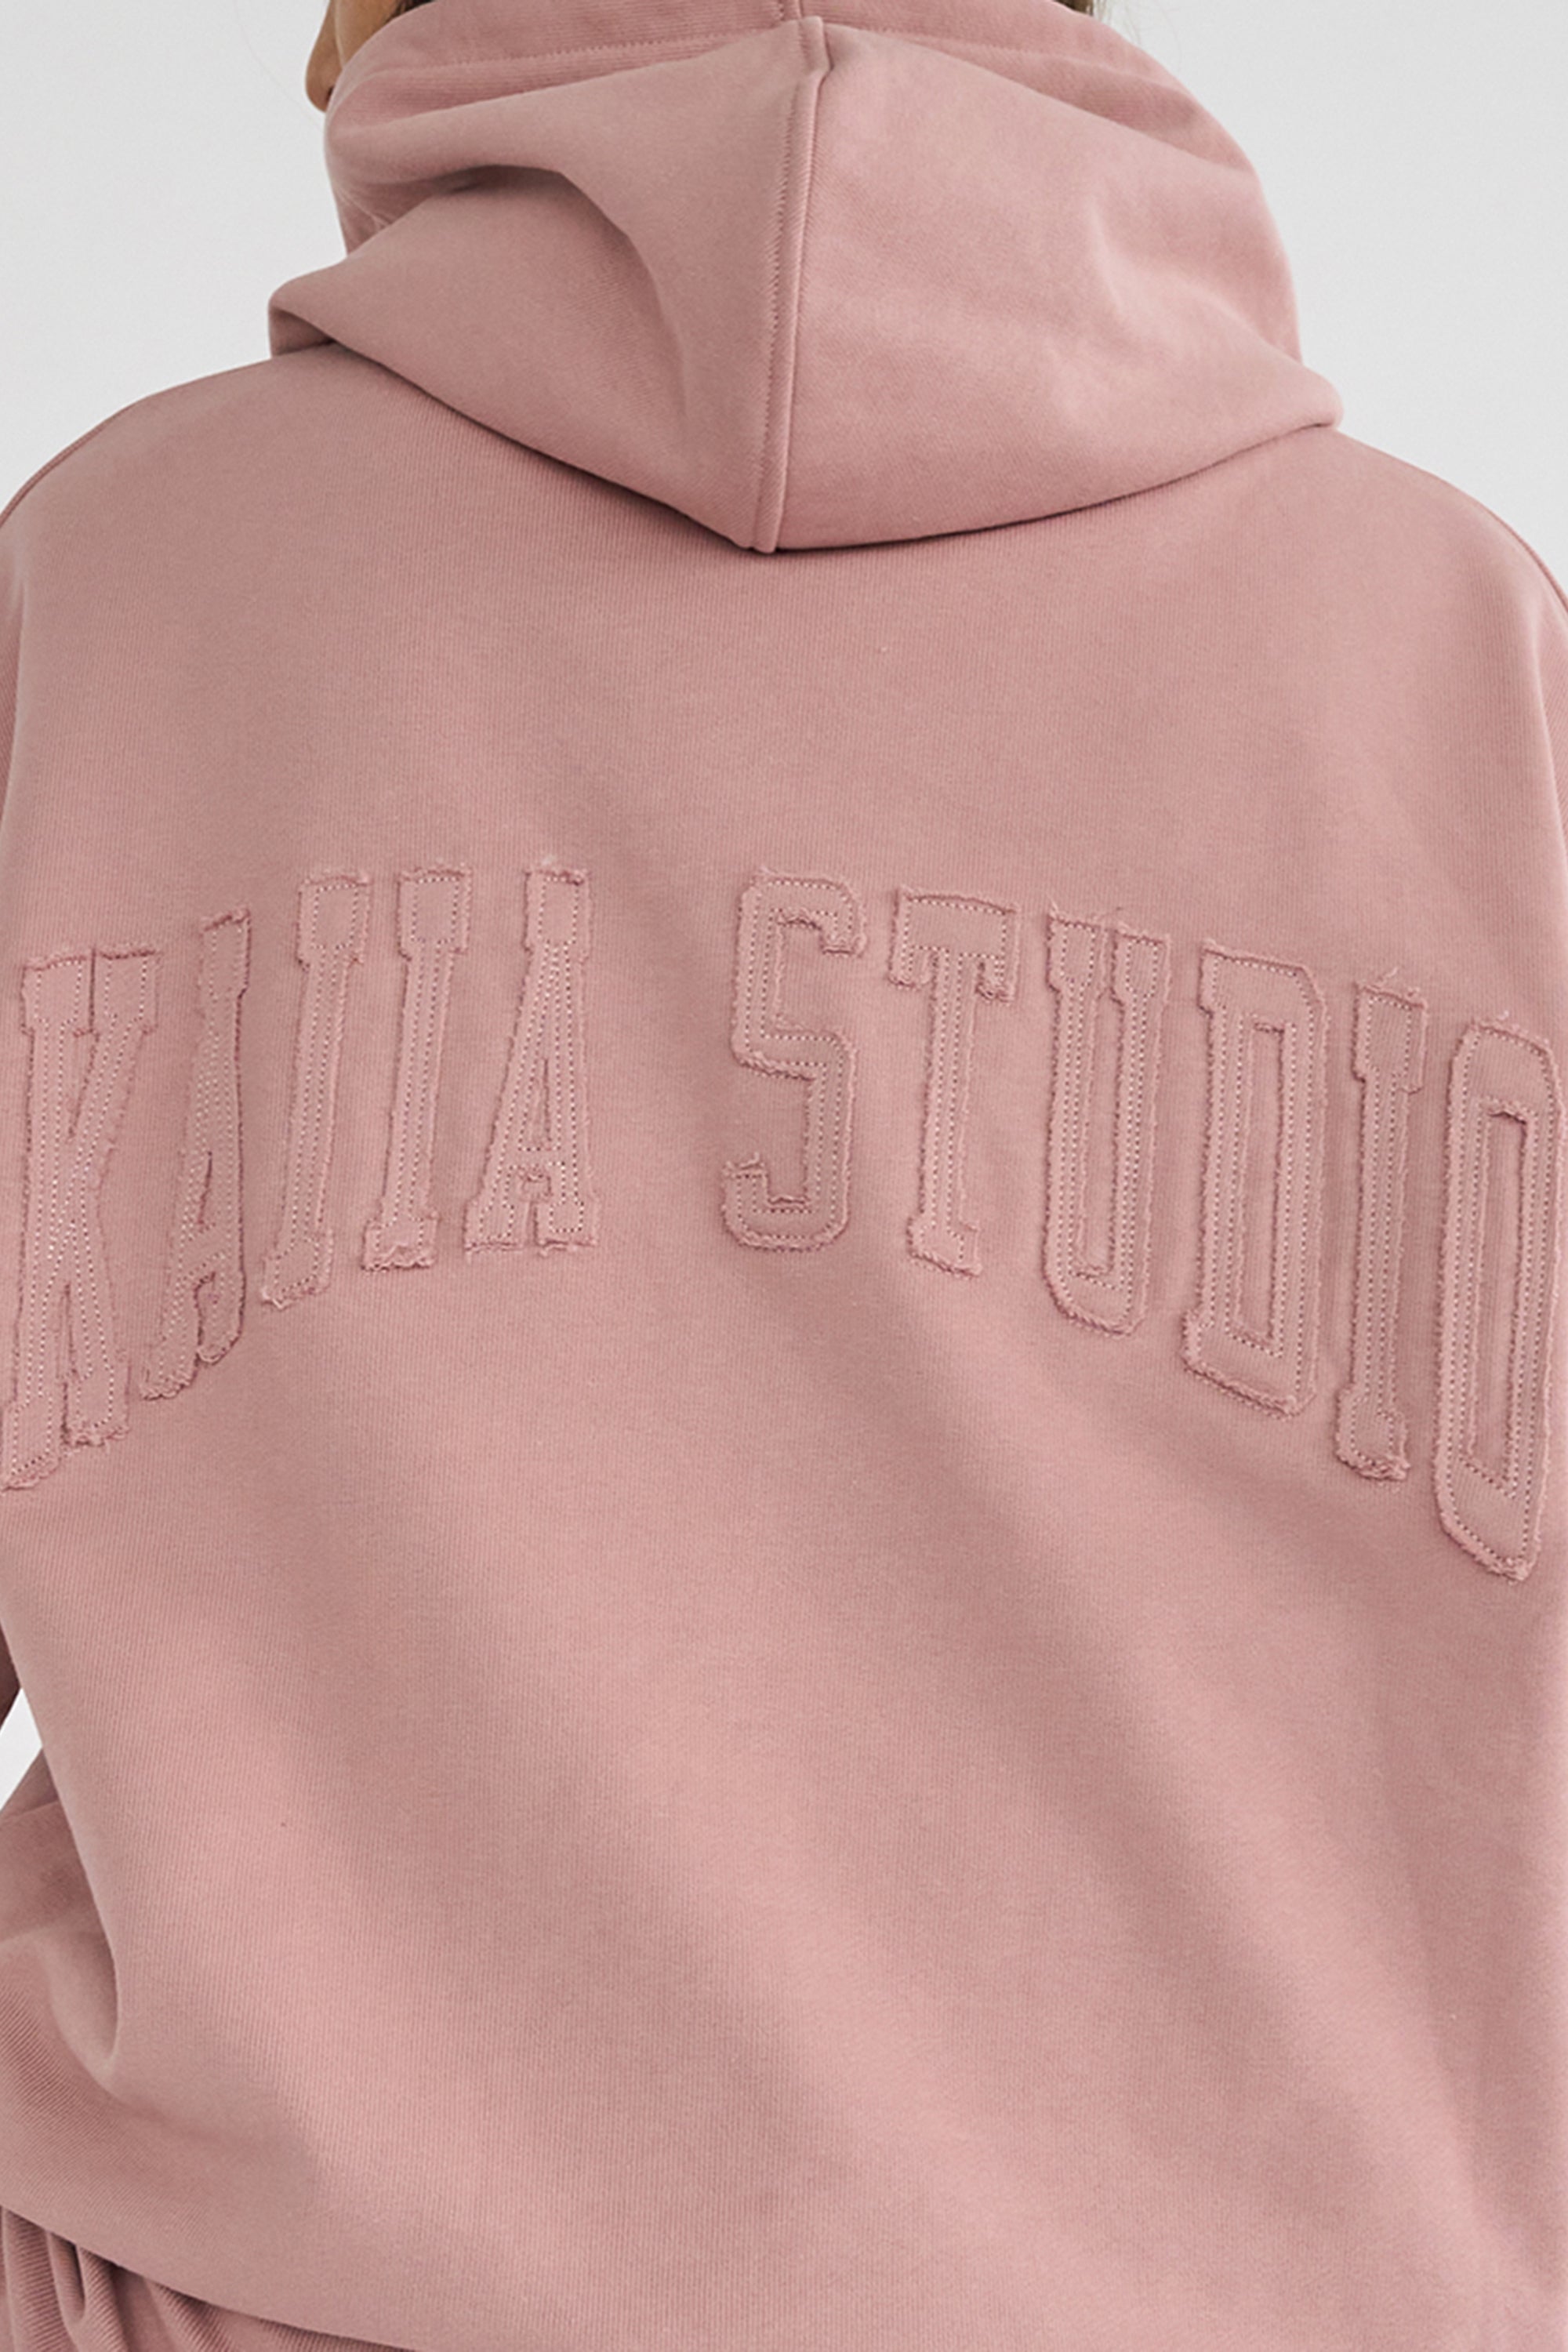 Kaiia Studio Back Distressed Applique Logo Hoodie Blush